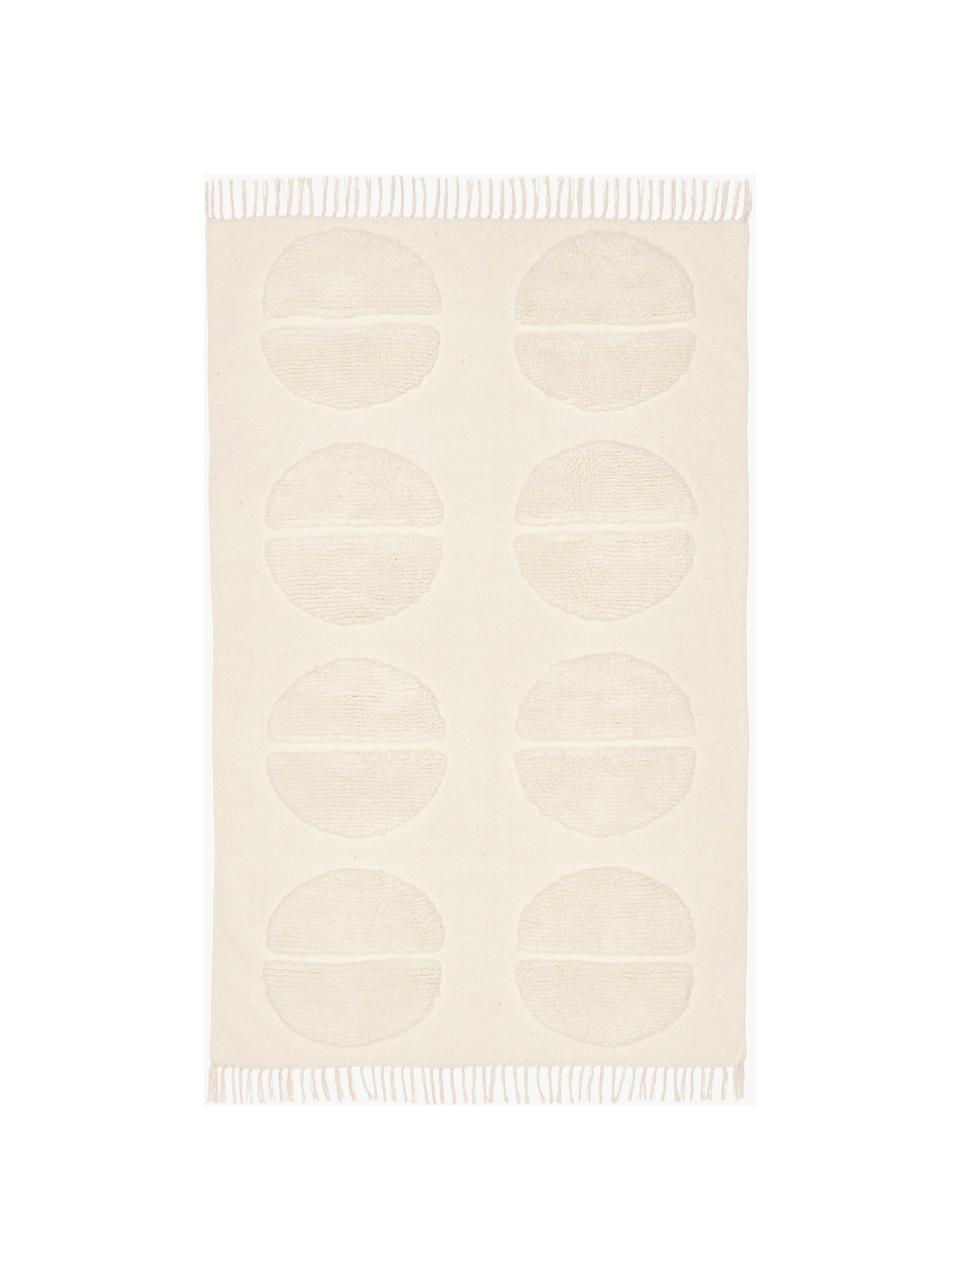 Tappeto in lana beige taftato a mano con effetto alto-basso Anica, Bianco crema, Larg. 80 x Lung. 150 cm (taglia XS)